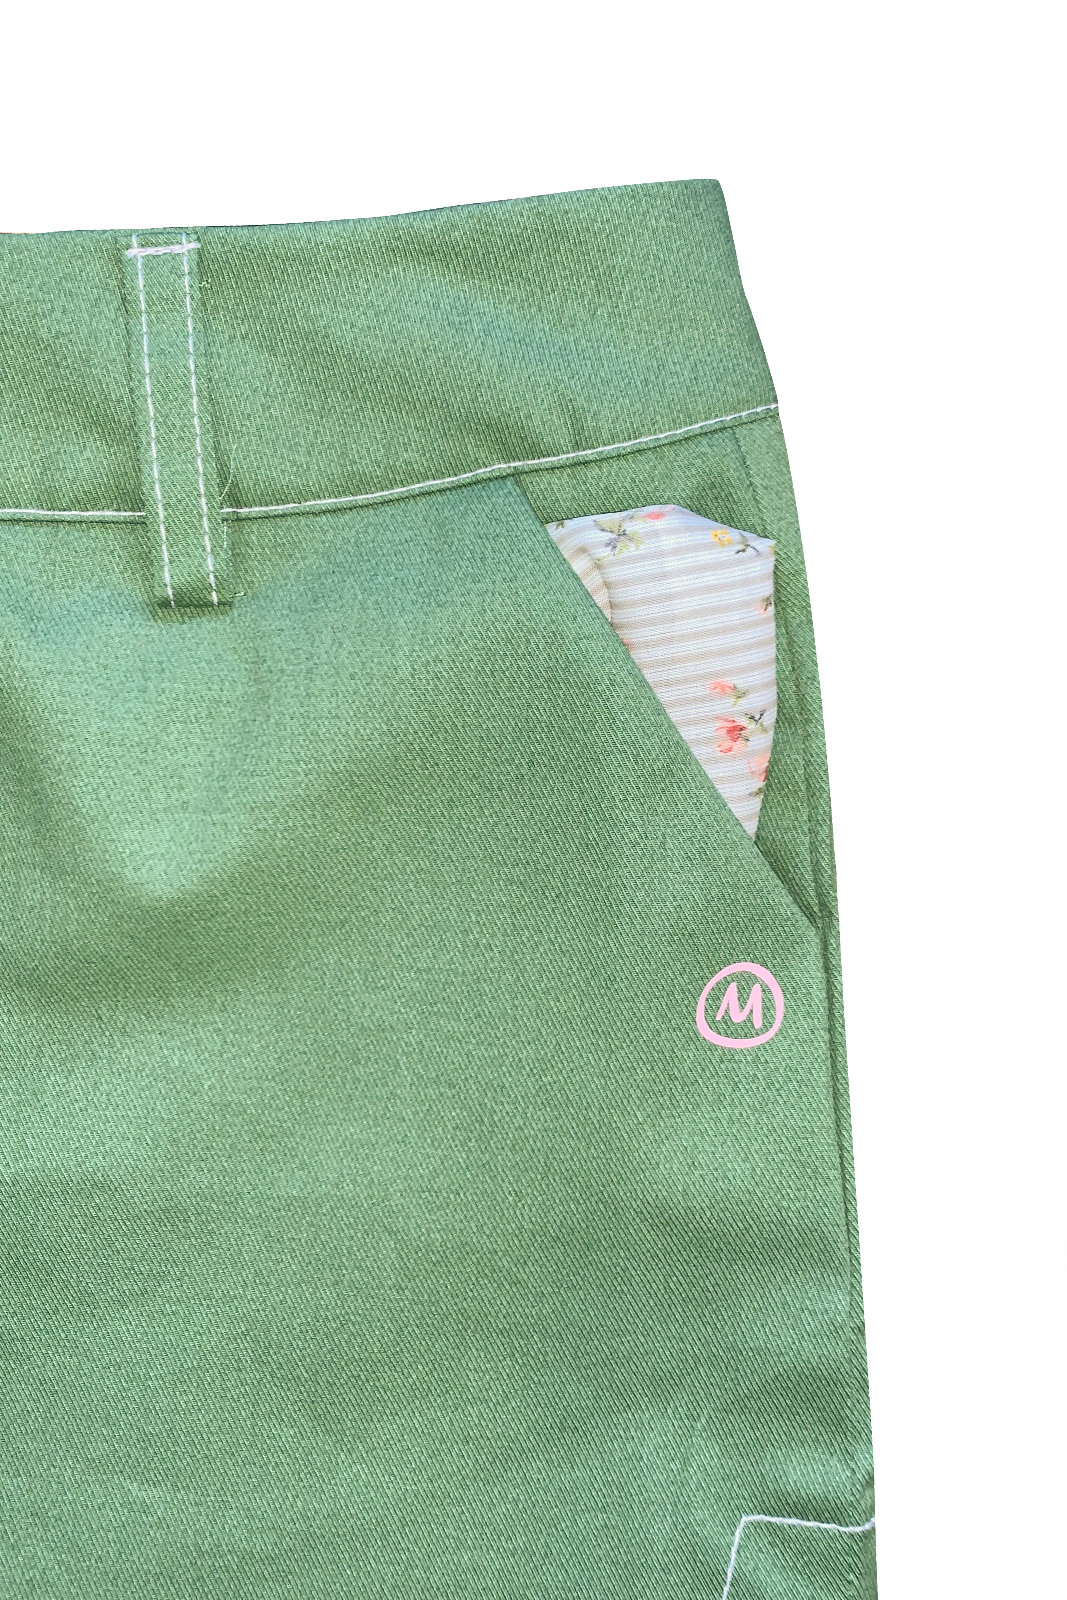 Pantalon court femme vert pour l’escalade STEFFY coton élastique